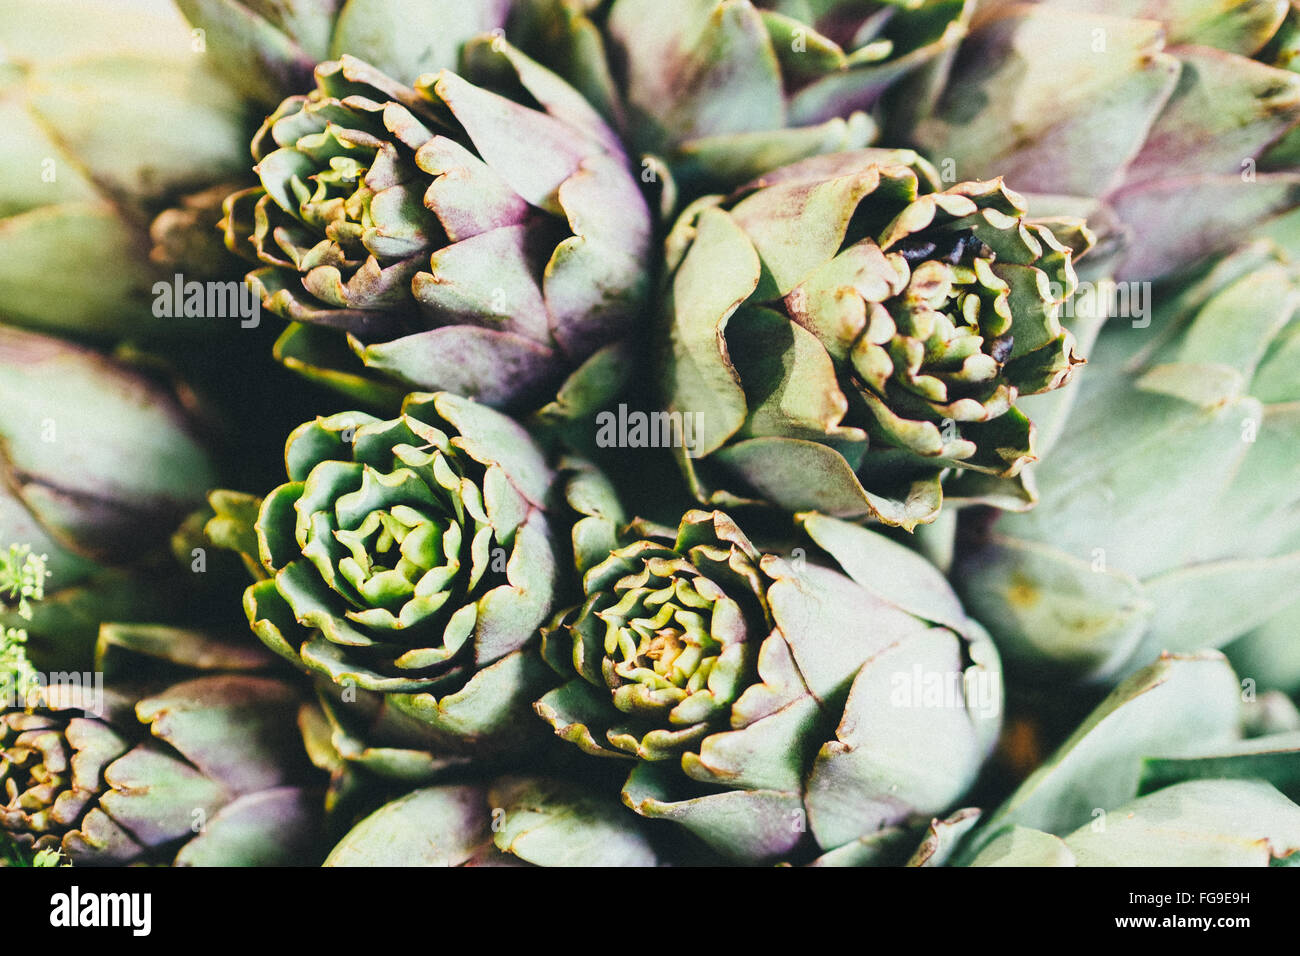 Full Frame Shot Of Succulent Plants Stock Photo